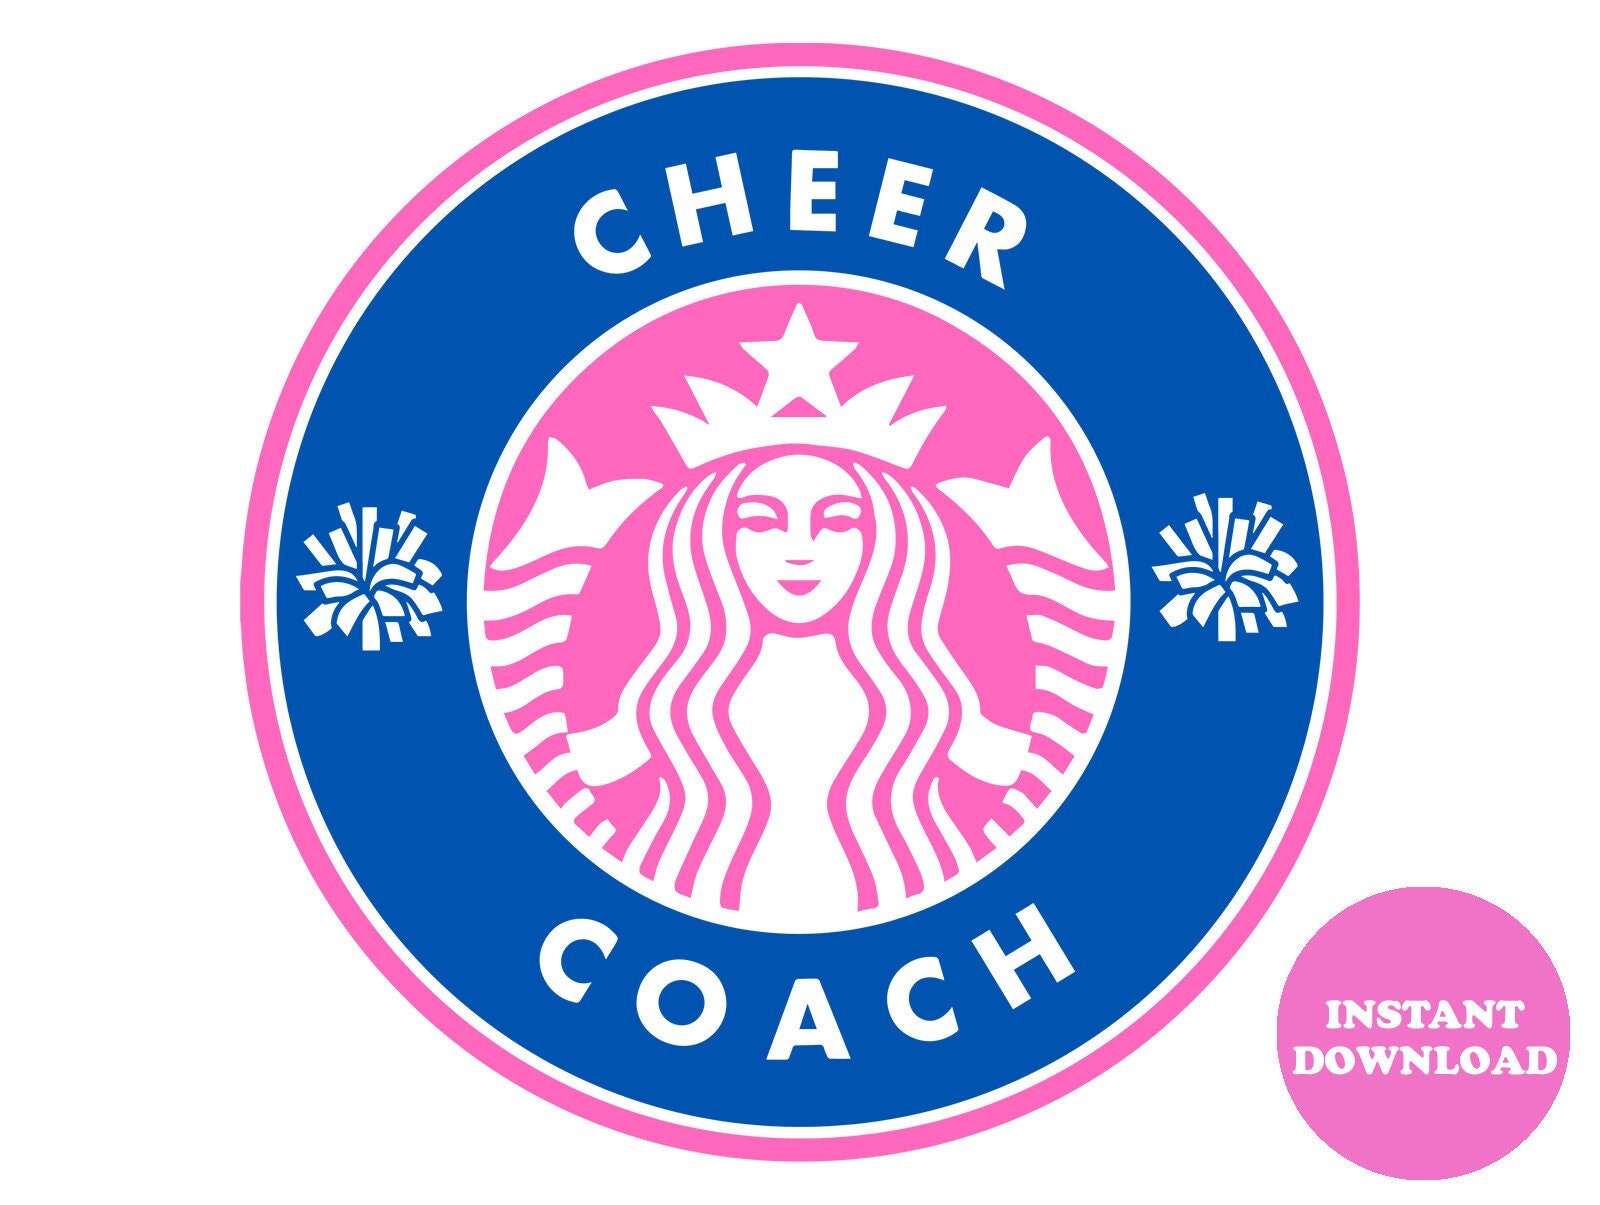 Starbucks Share the Cheer Gift Set $26.98 (Retail $38.99)